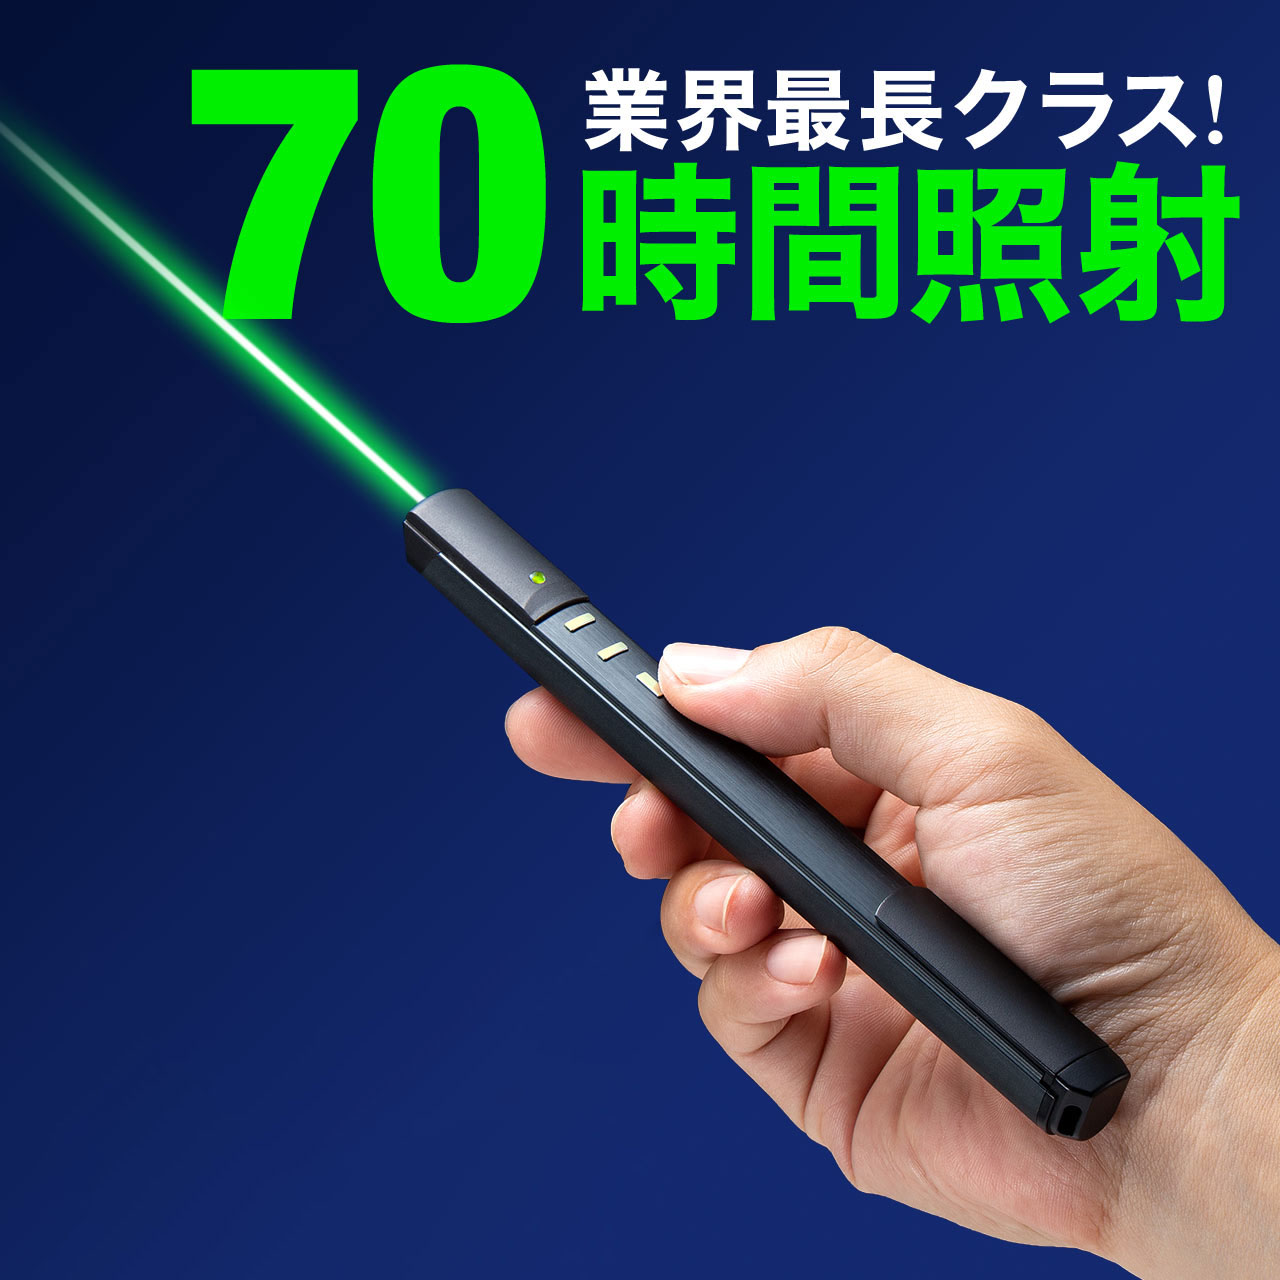 【最大2,500円クーポン発行中】レーザーポインター 緑 パワーポイント powerpoint 70時間連続照射 プレゼンリモコン Bluetooth4.0 PSC認証 電池式 おすすめ 名入れ可能 EZ2-LPP037